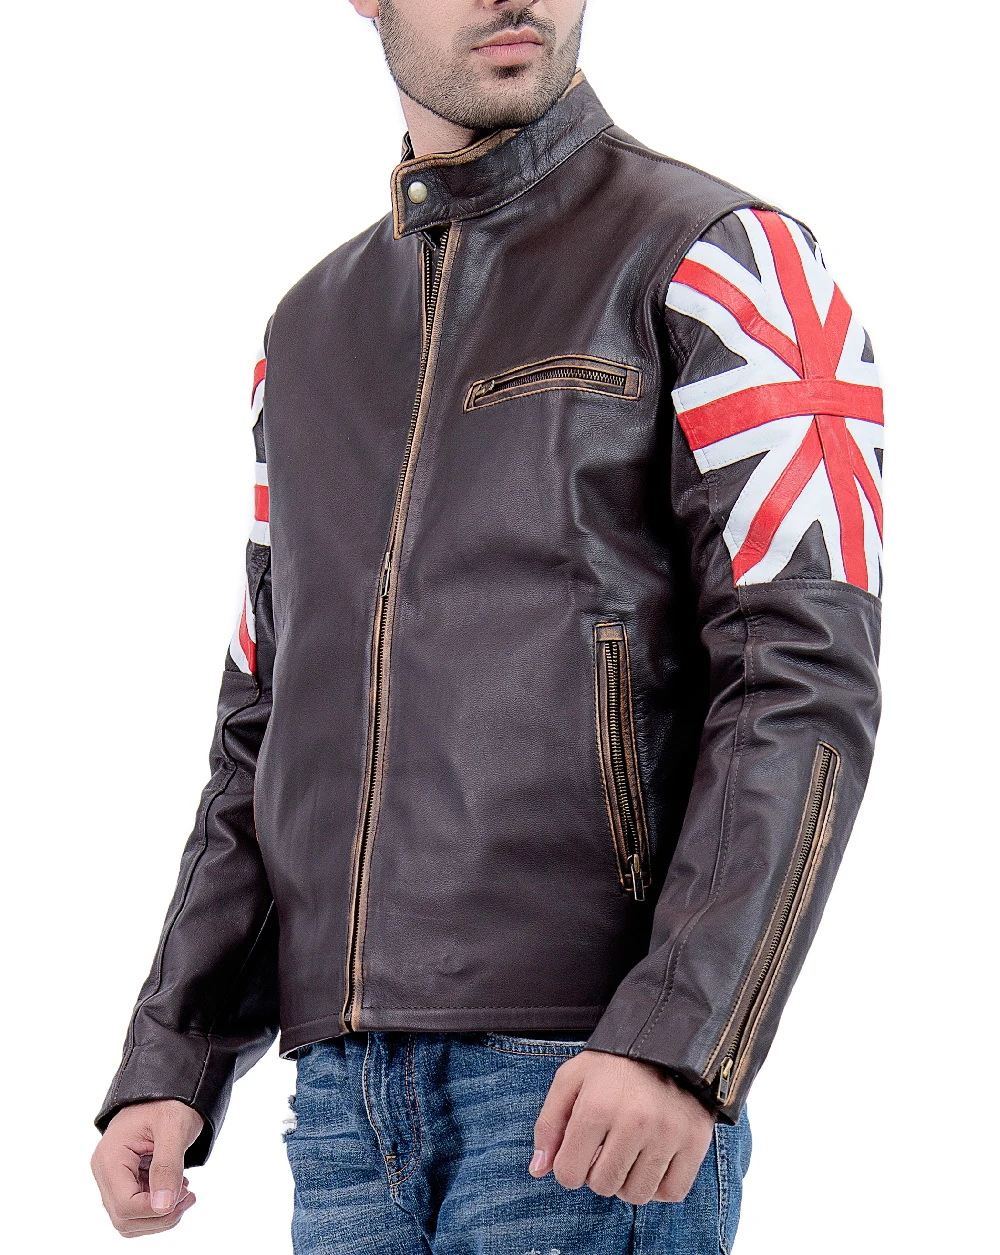 Buy Union Leather Jacket